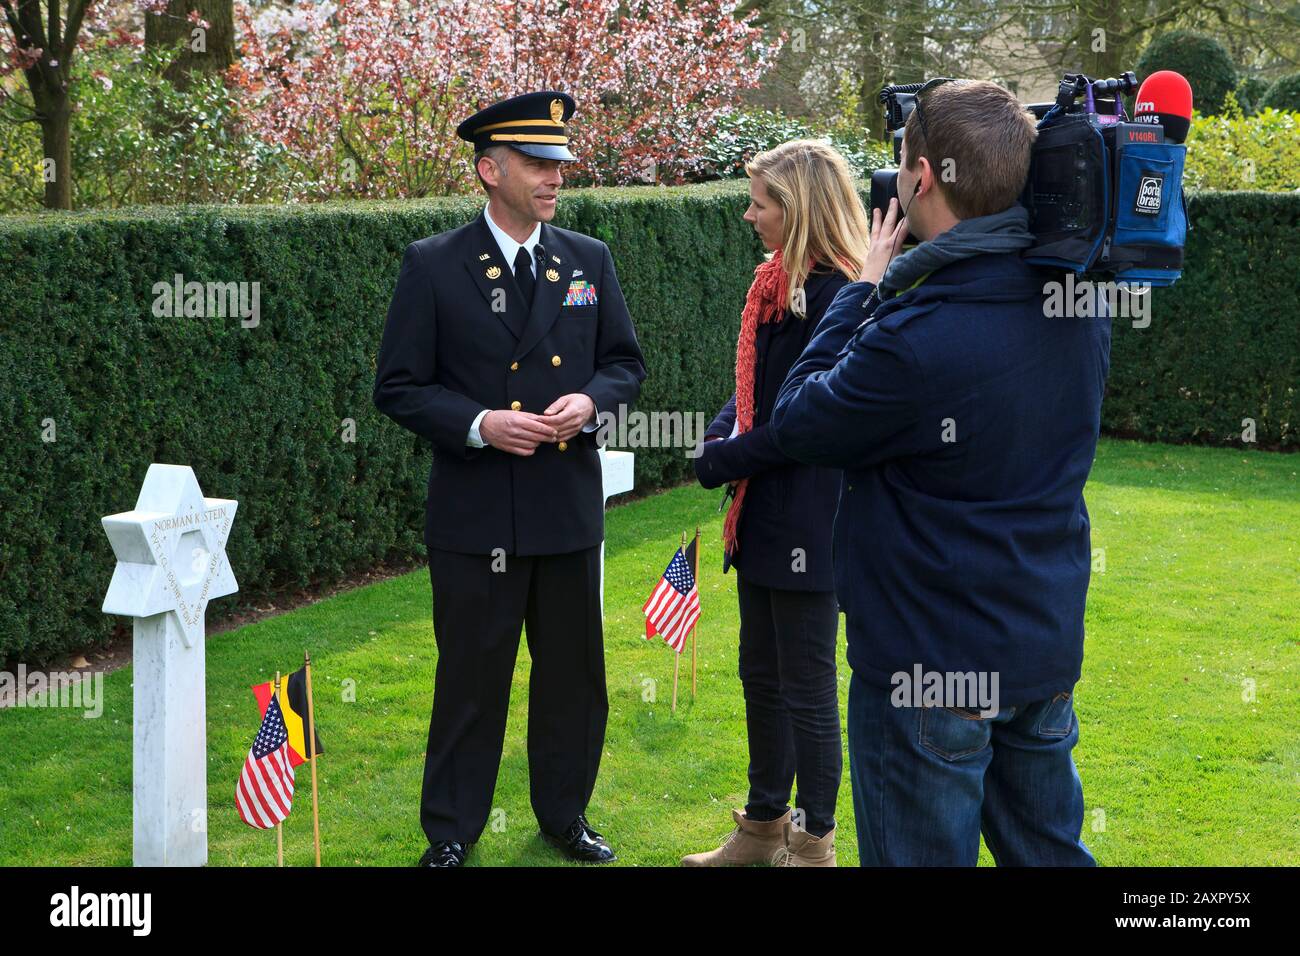 Julie Colpaert de la chaîne de télévision belge VTM interviewant le gardien du cimetière américain de campagne de Flandre de la première Guerre mondiale à Waregem, Belgique Banque D'Images